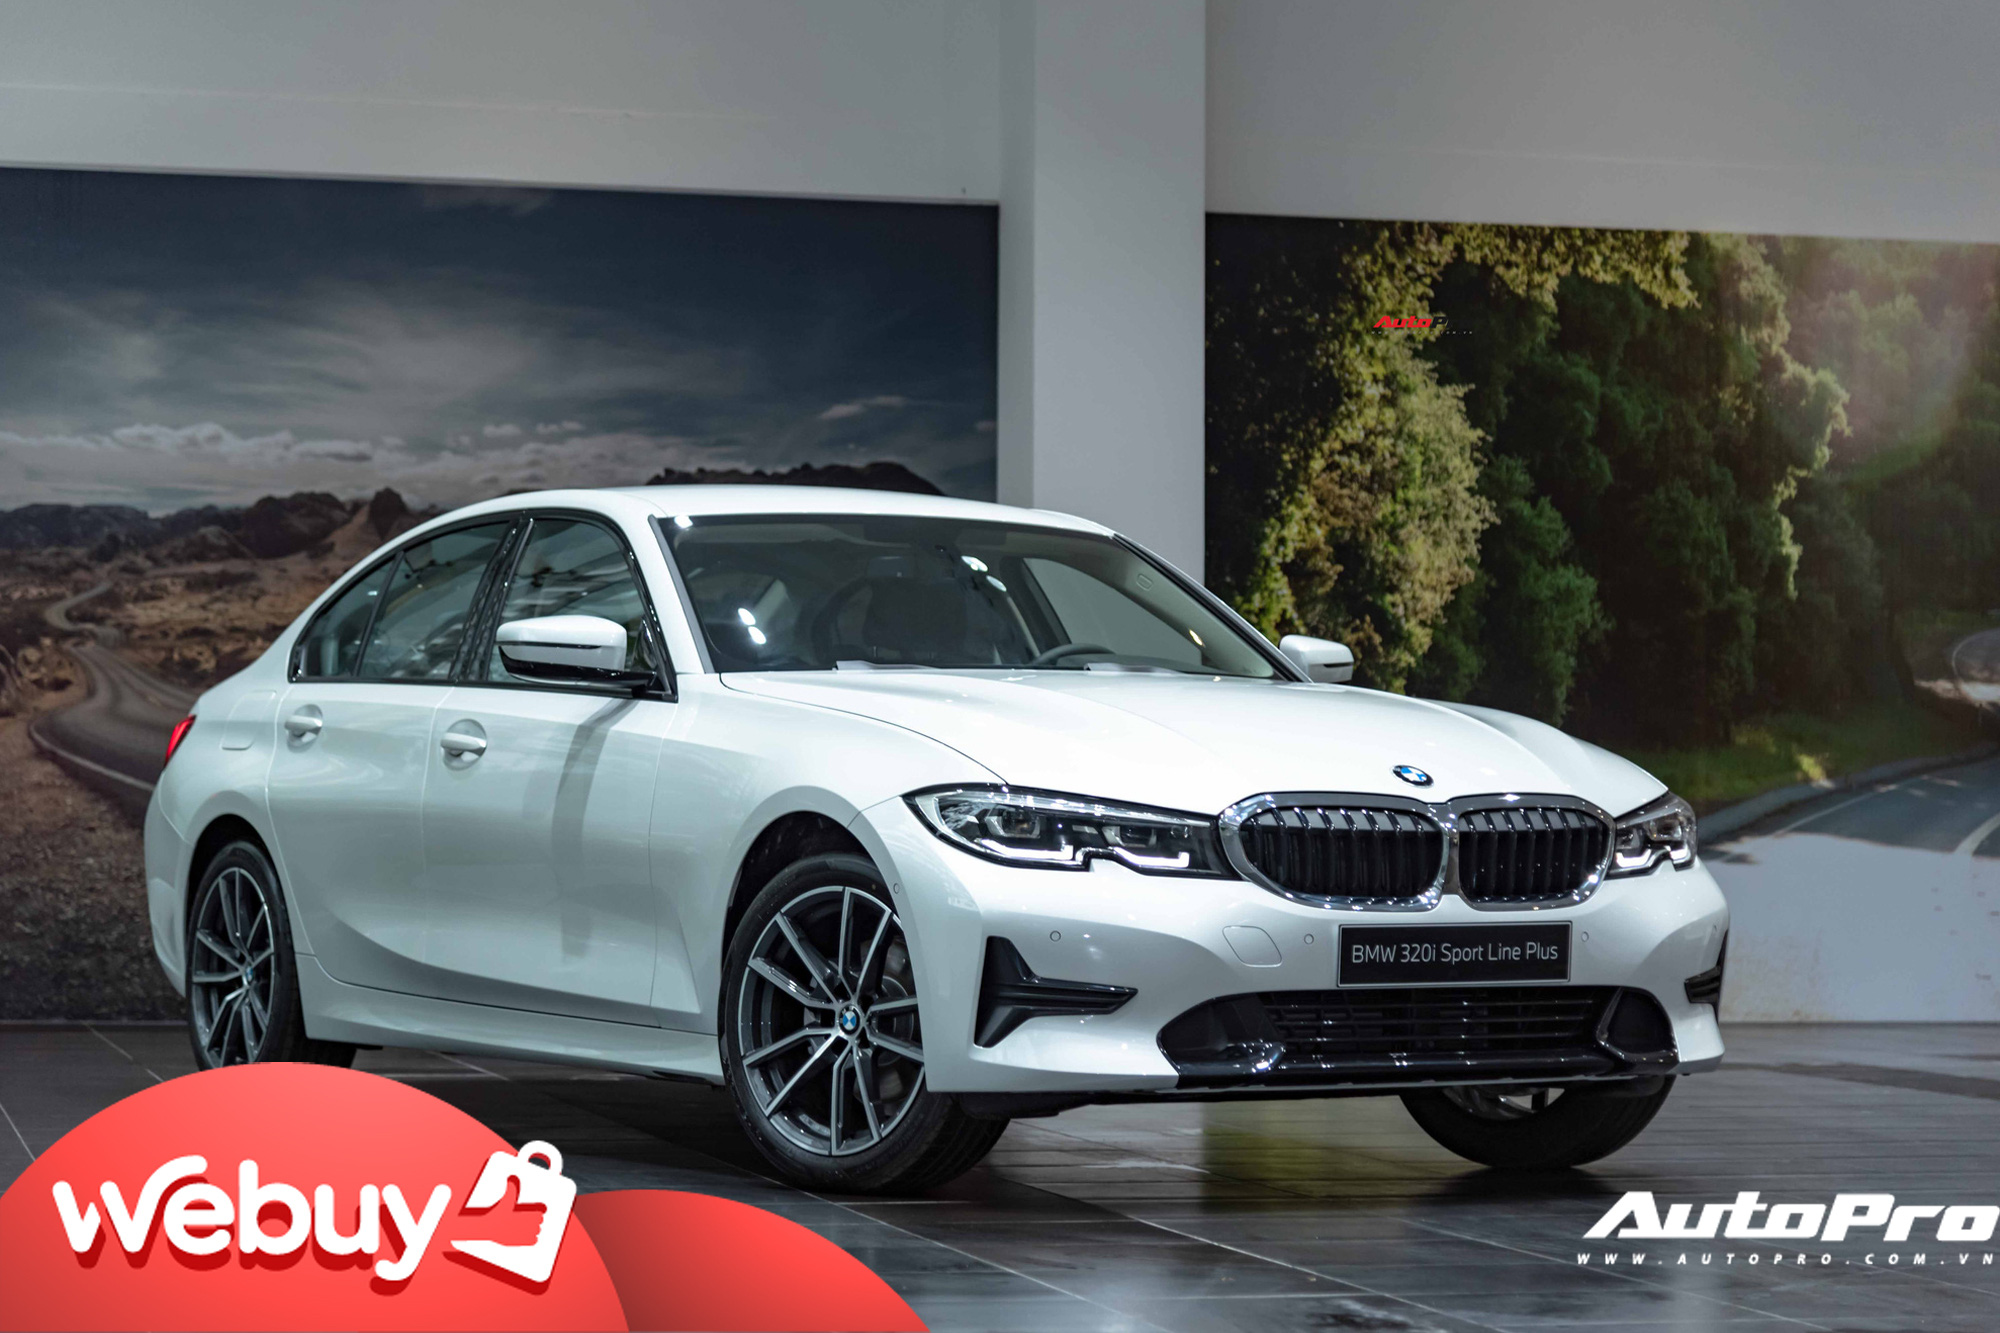 Ra mắt BMW 3-Series 2020 tại Việt Nam: 3 phiên bản, giá từ 1,9 tỷ đồng, đấu Mercedes-Benz C-Class bằng nhiều trang bị